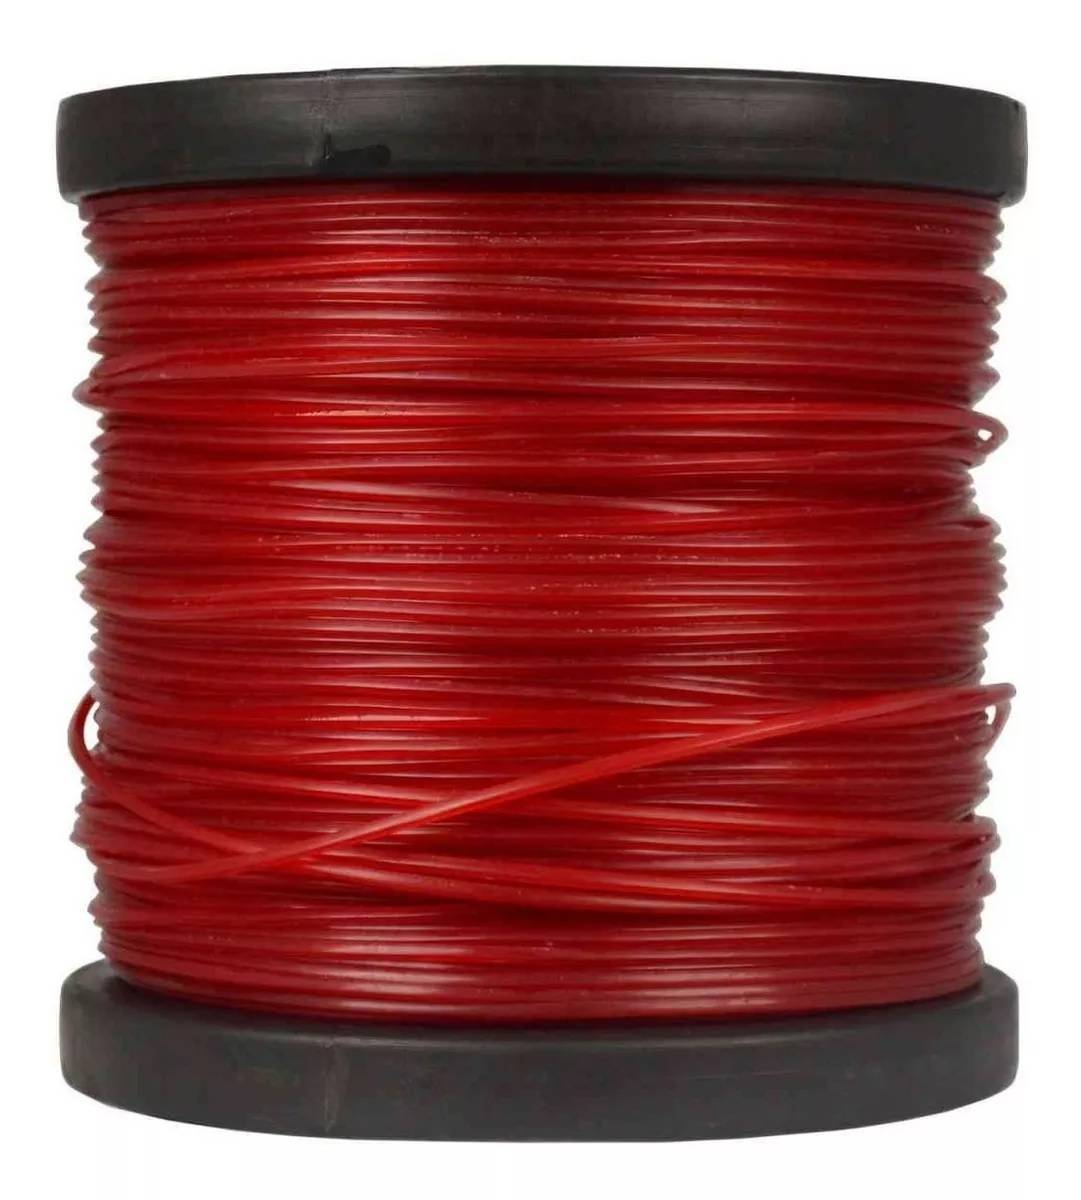 Rolo Bobina de Fio de Nylon 3,00mm para Roçadeiras Vermelho Redondo C/ 2,268Kg - 255Mts